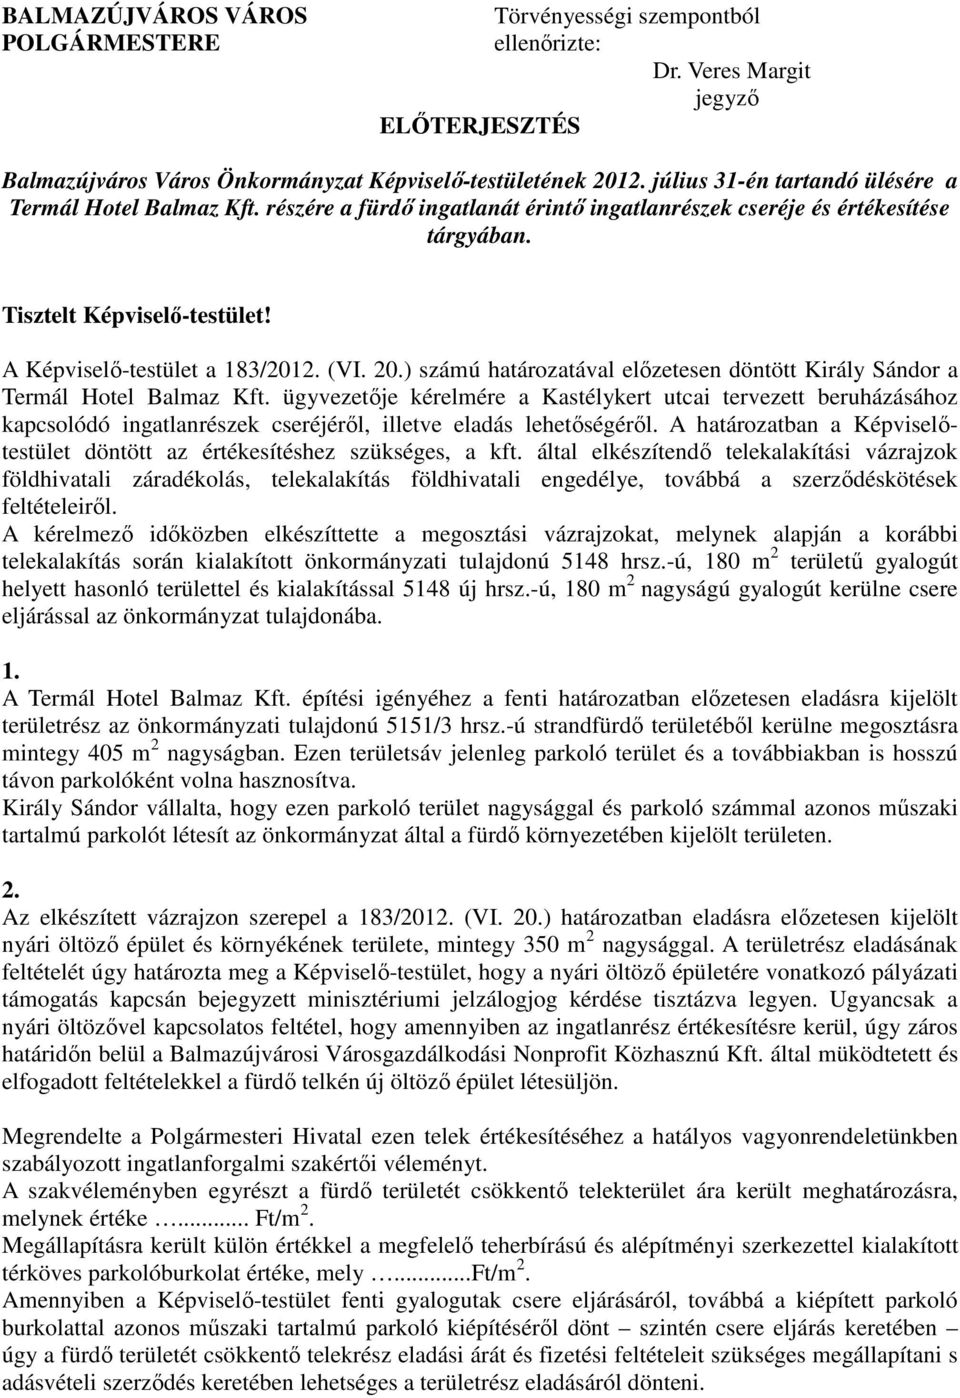 A Képviselı-testület a 183/2012. (VI. 20.) számú határozatával elızetesen döntött Király Sándor a Termál Hotel Balmaz Kft.